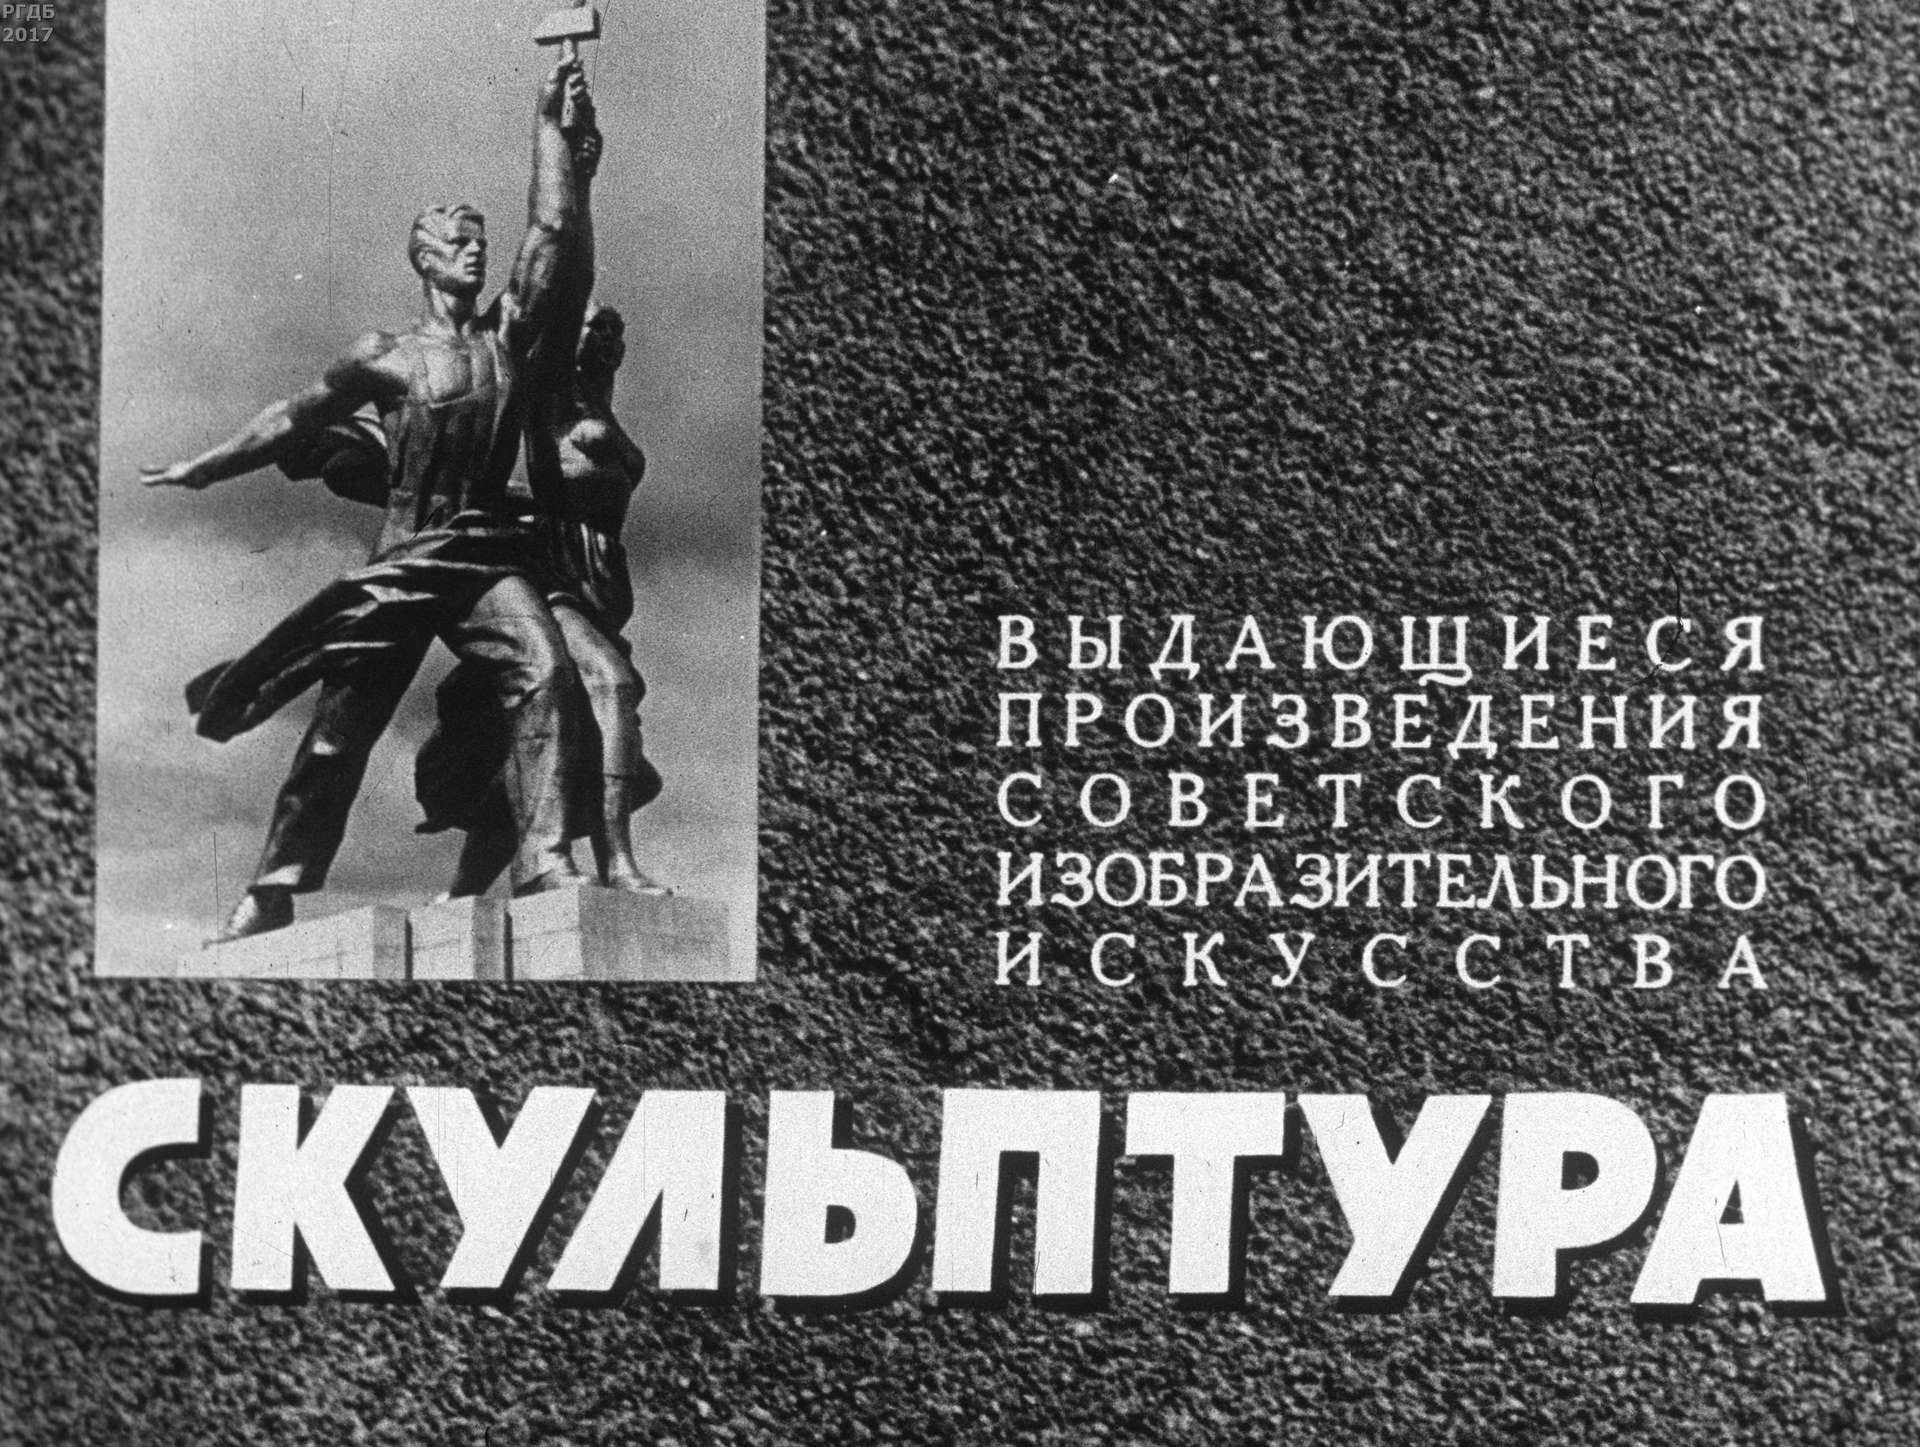 Выдающиеся произведения советского изобразительного искусства. Скульптура. Ч. 1